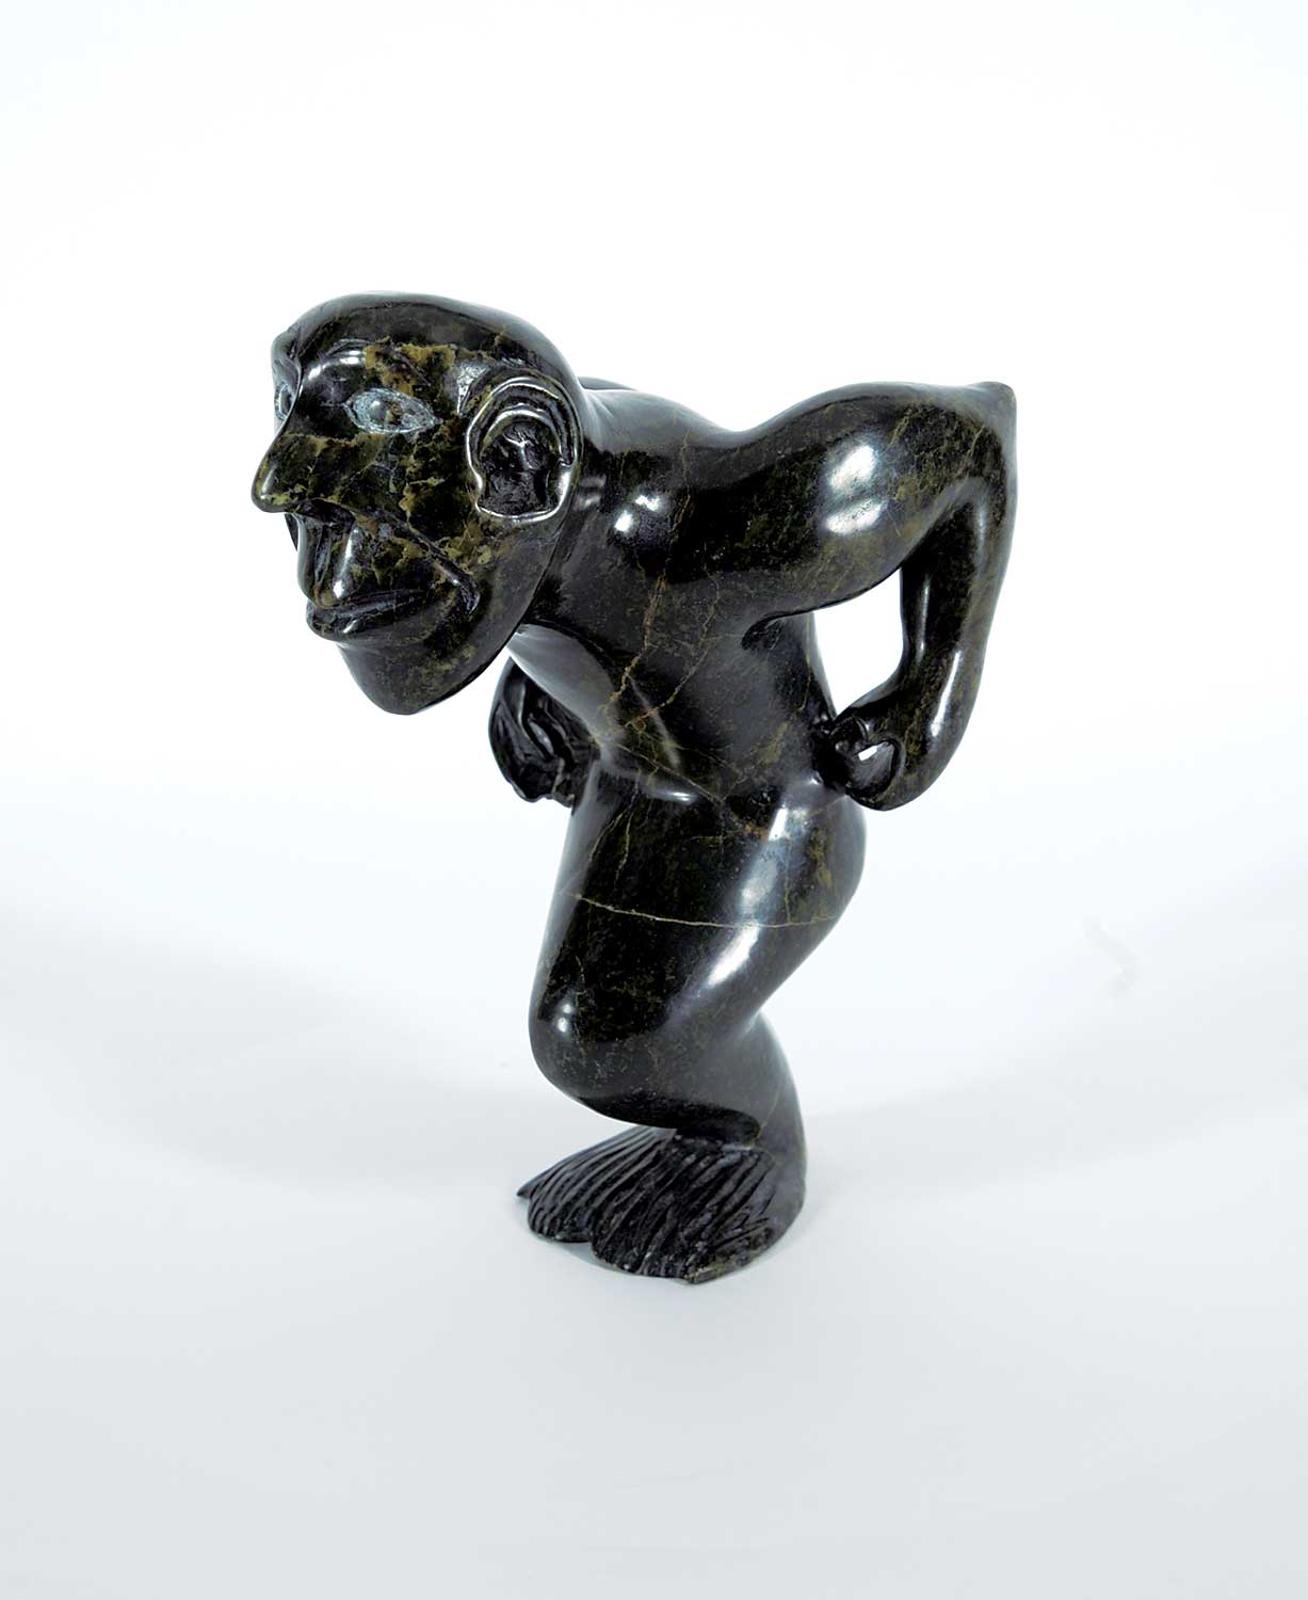 Etidlooie - Untitled - Crouching Merman